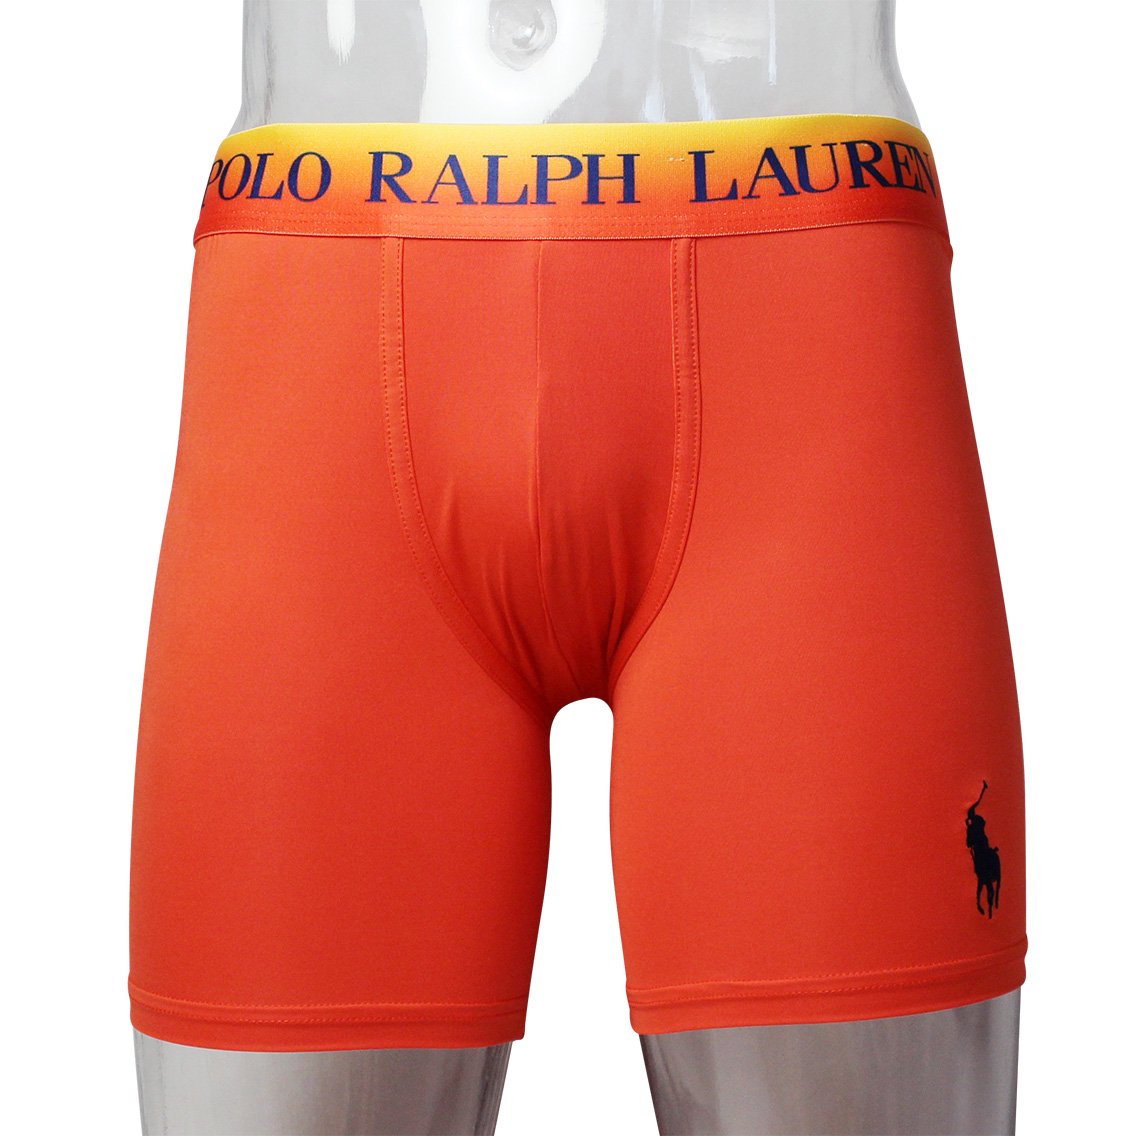 Polo Ralph Lauren(ポロラルフローレン)[LMB4HR-A9KL]:ボクサーパンツ 